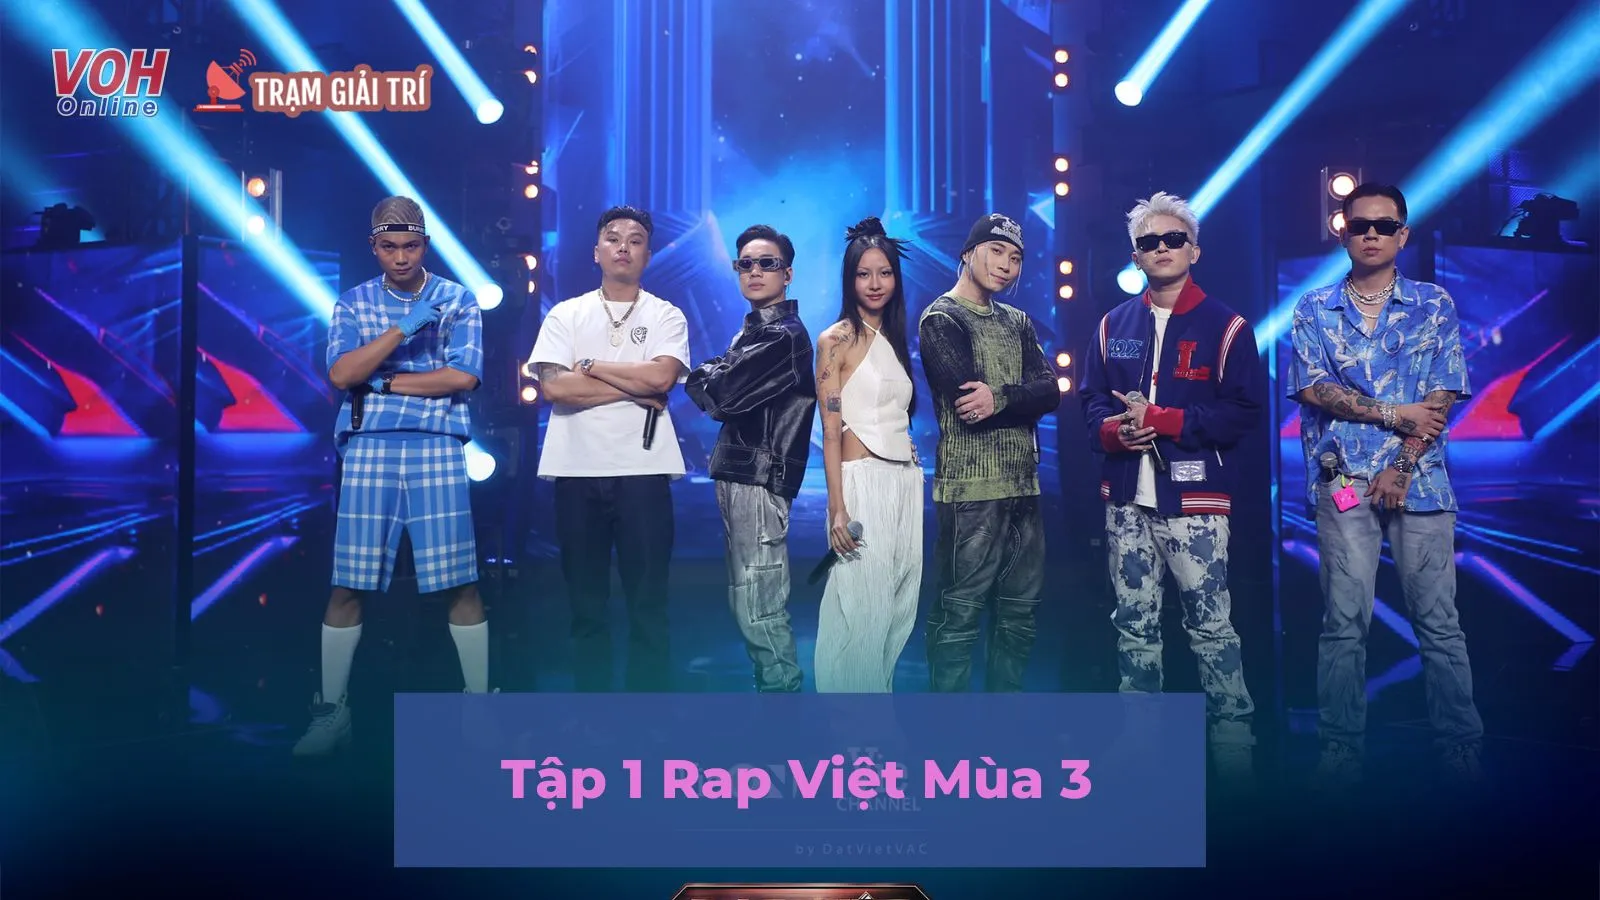 Tập 1 Rap Việt Mùa 3: B Ray nhận trái đắng vì tung nón nhưng vẫn vụt mất thí sinh yêu thích